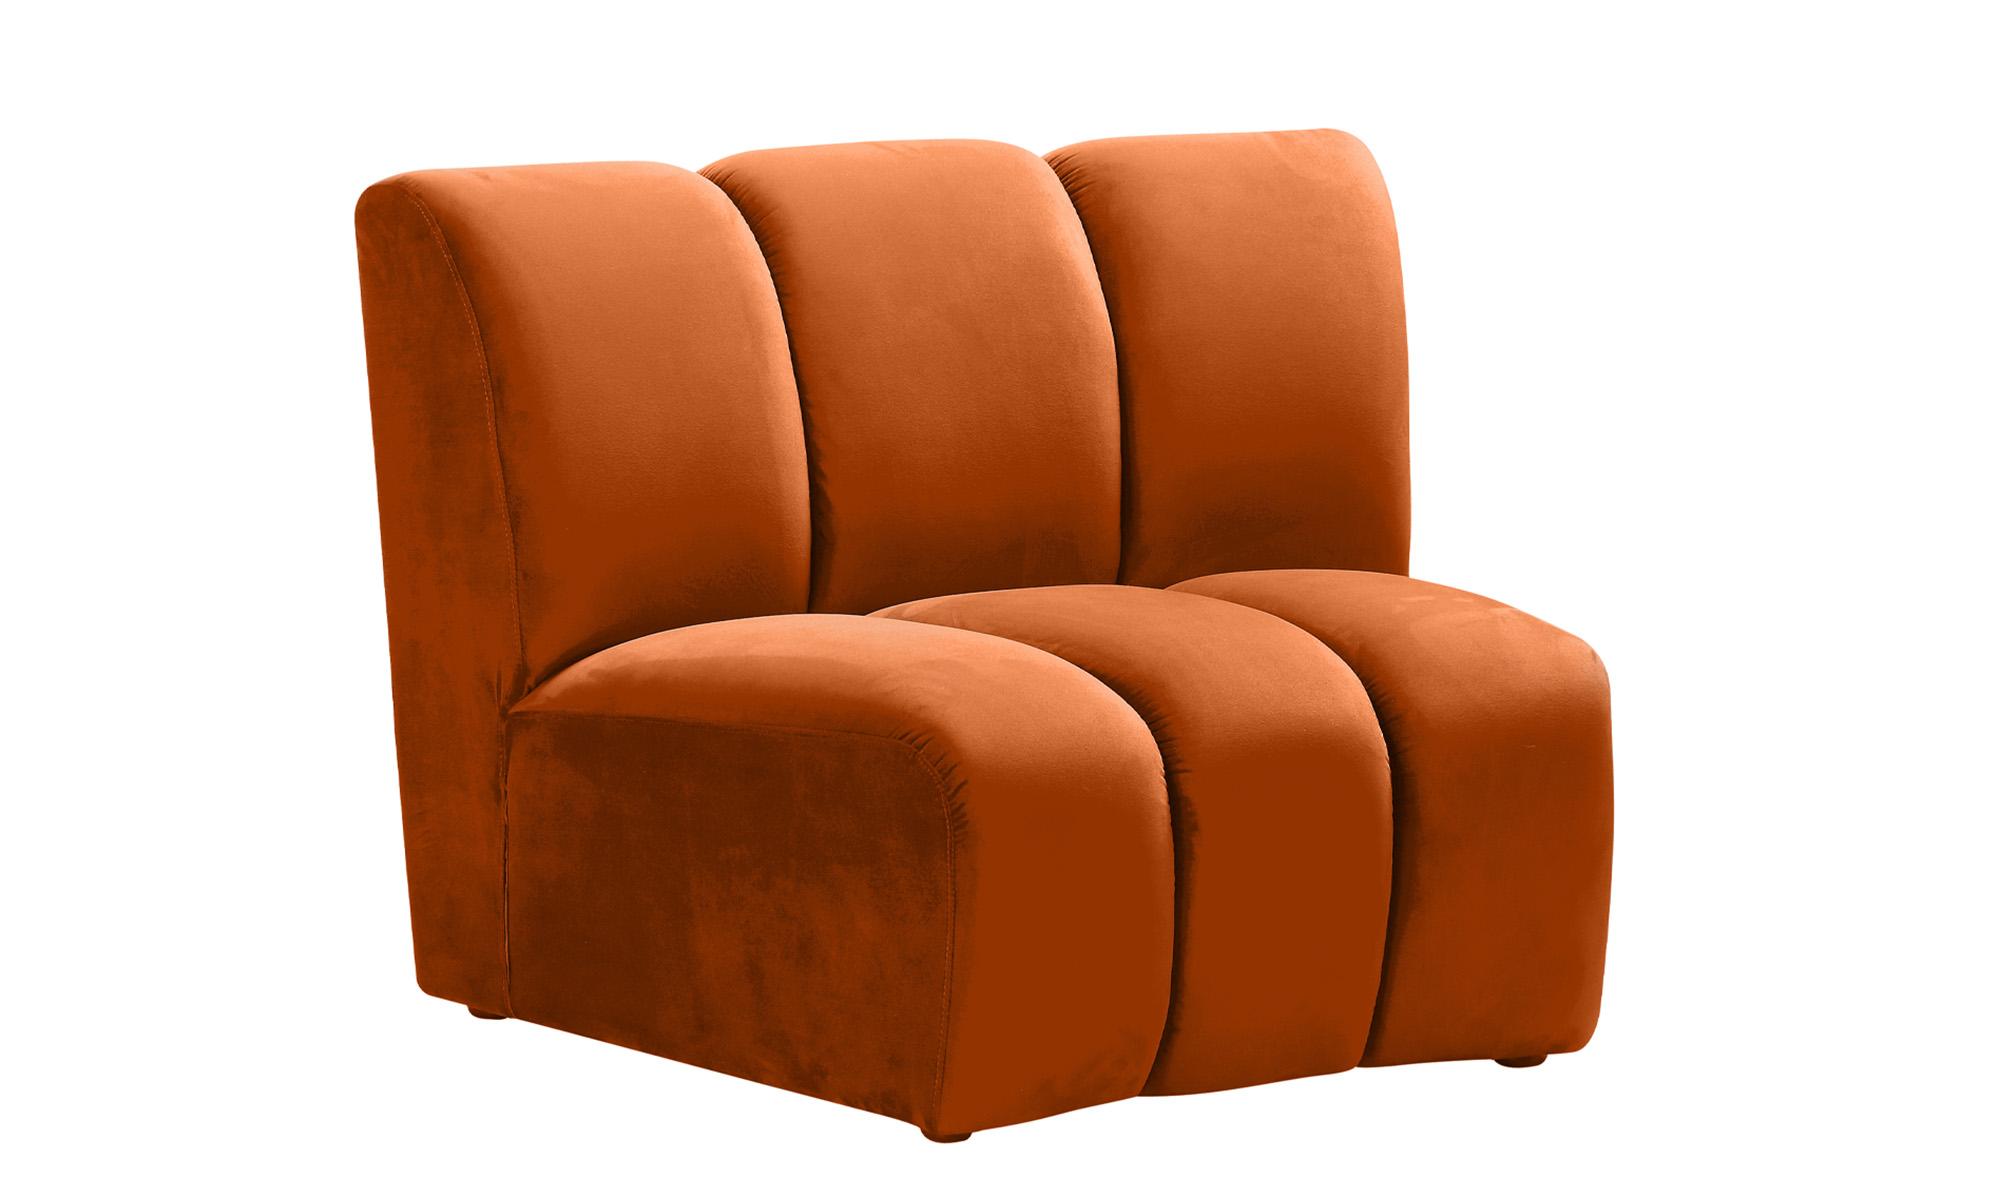 

    
638Cognac-10PC Meridian Furniture Modular Sectional Sofa
